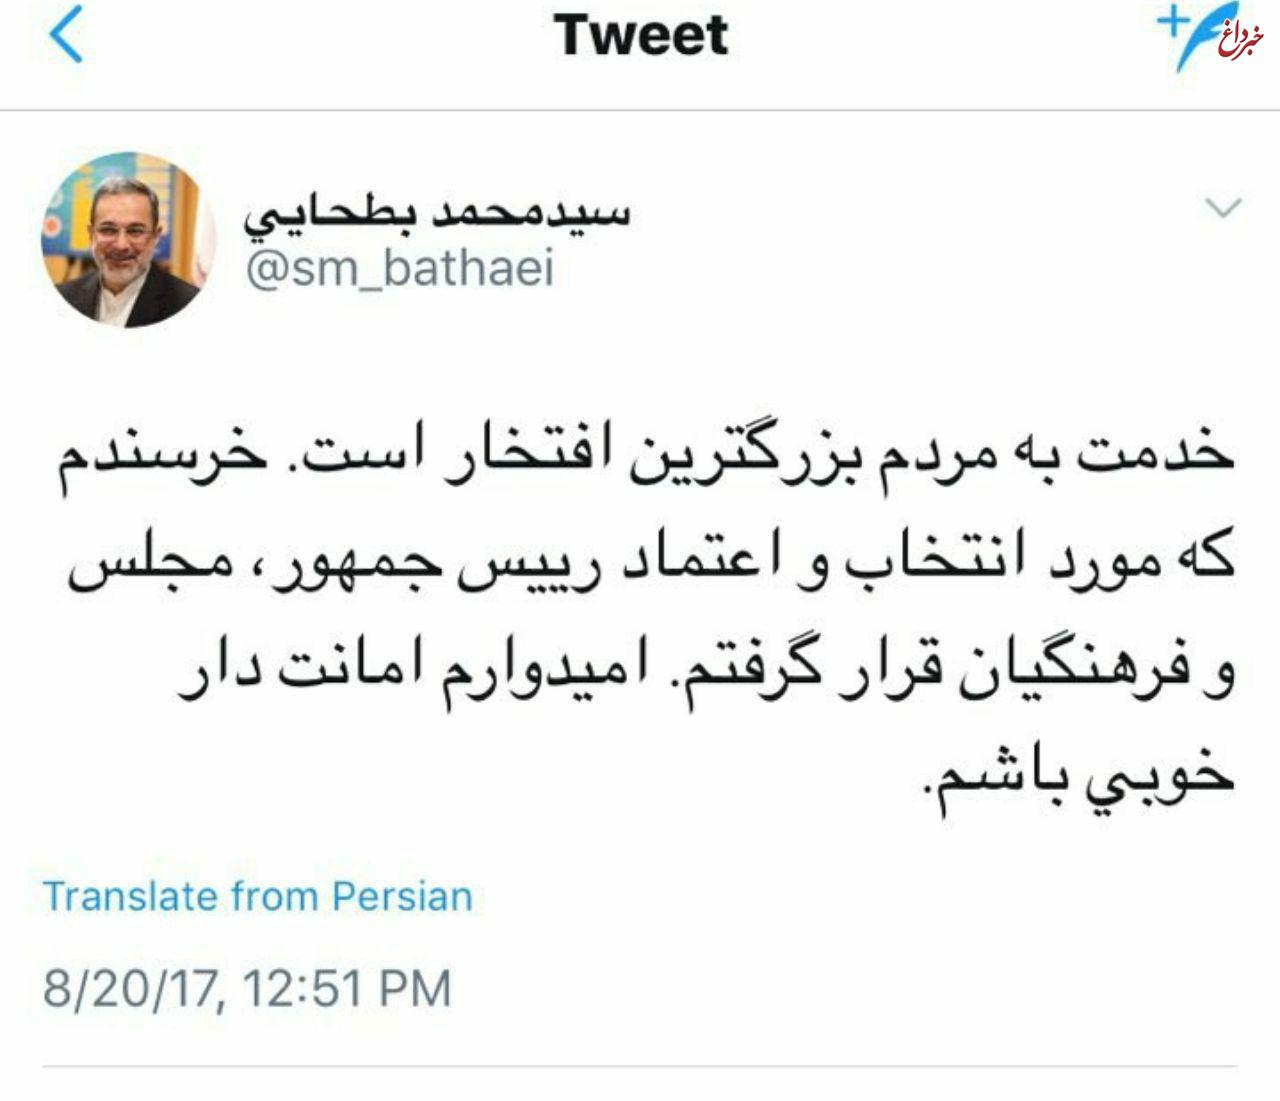 اولین توییت بطحایی به عنوان وزیر آموزش و پرورش دولت دوازدهم /عکس